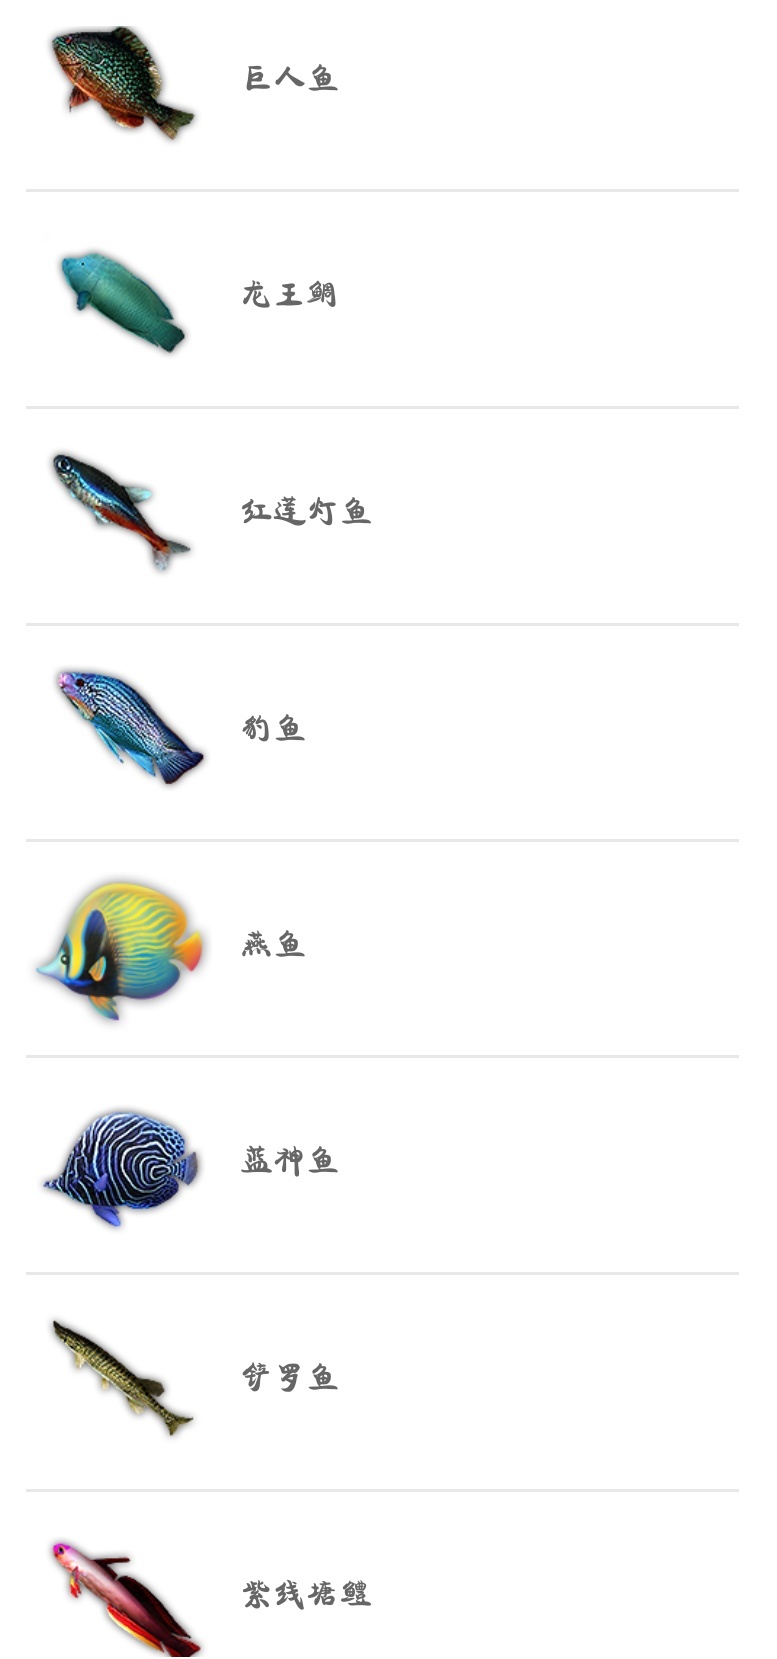 蝶鱼,凤凰鱼,食人鲳 红品质鱼: 毒蛇鱼,深海龙鱼 以上就是妄想山海